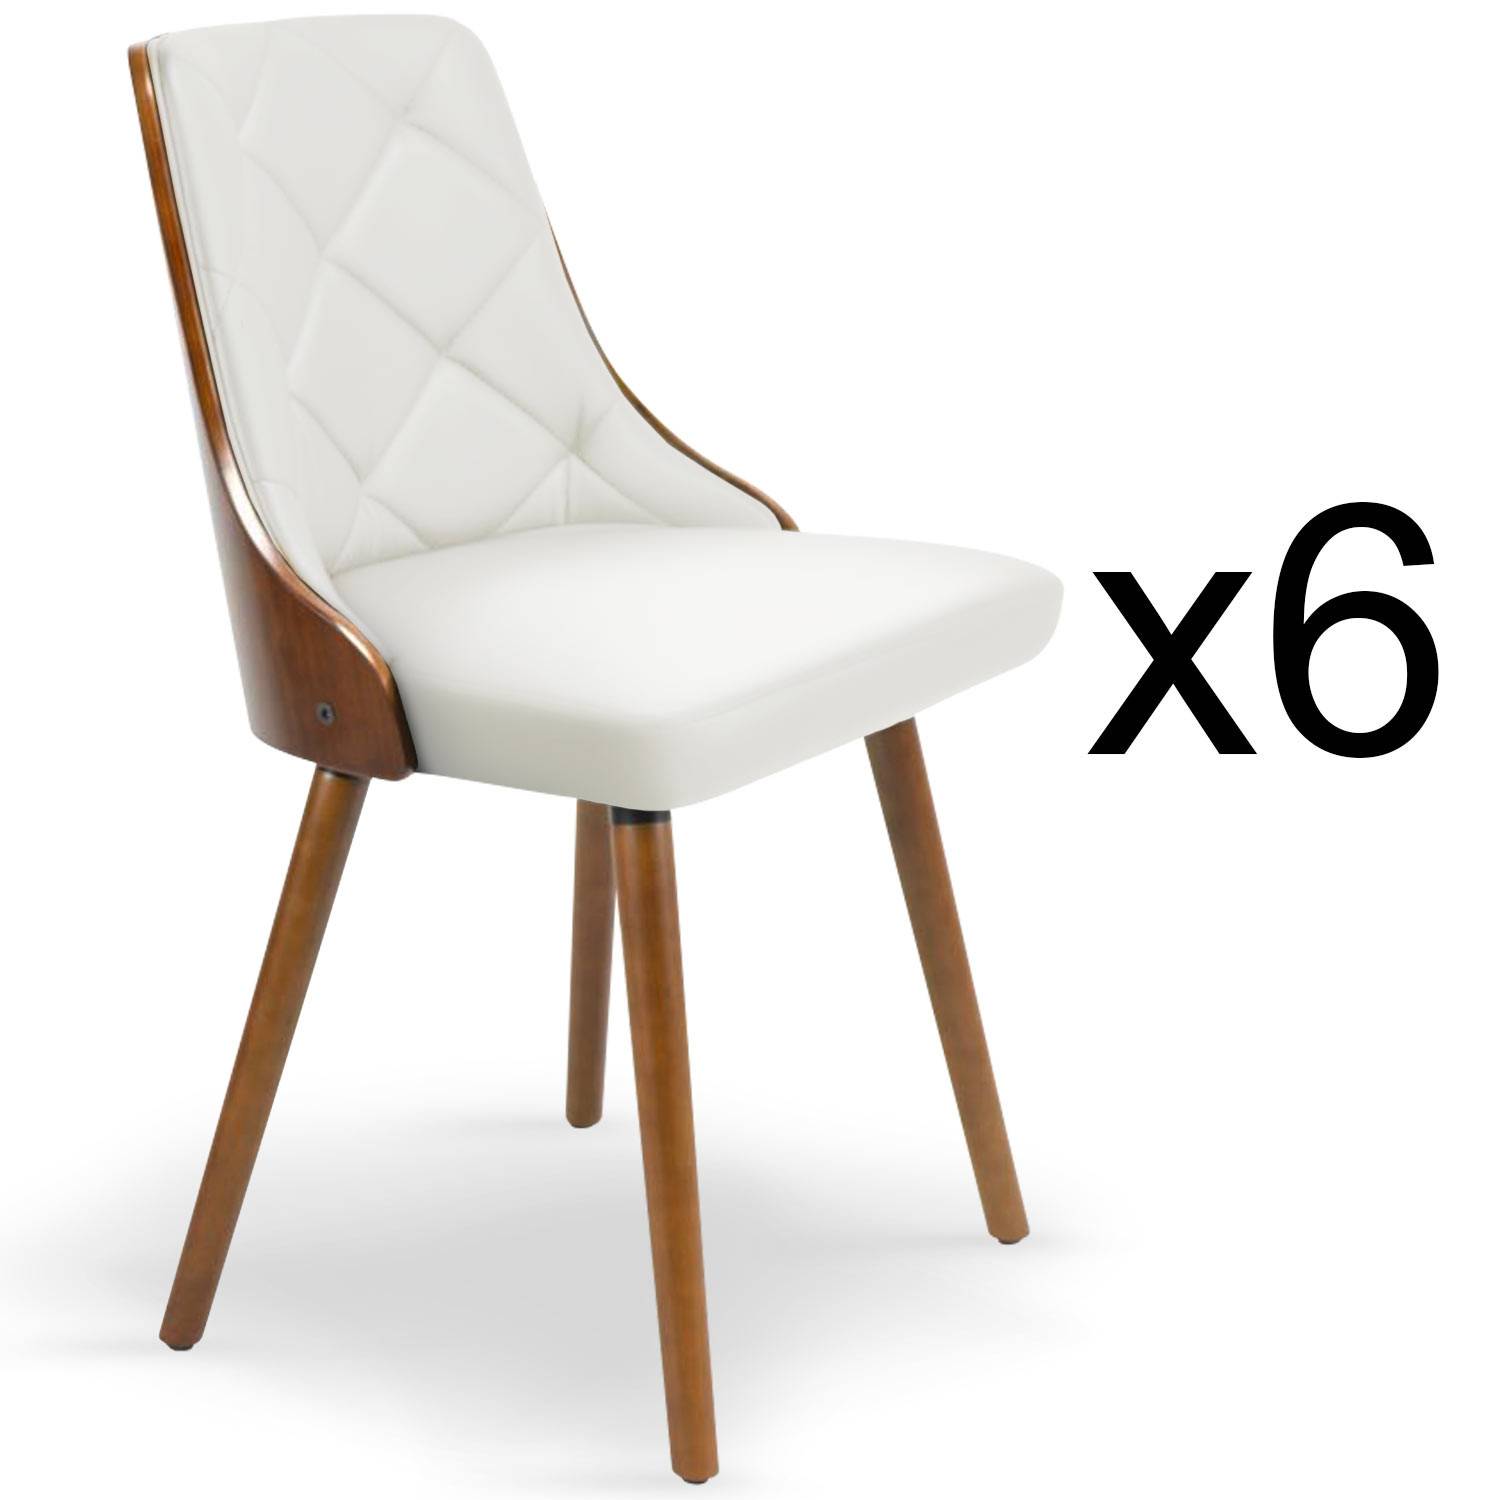 Lote de 6 sillas escandinavas Lalix de madera color avellana y blanco